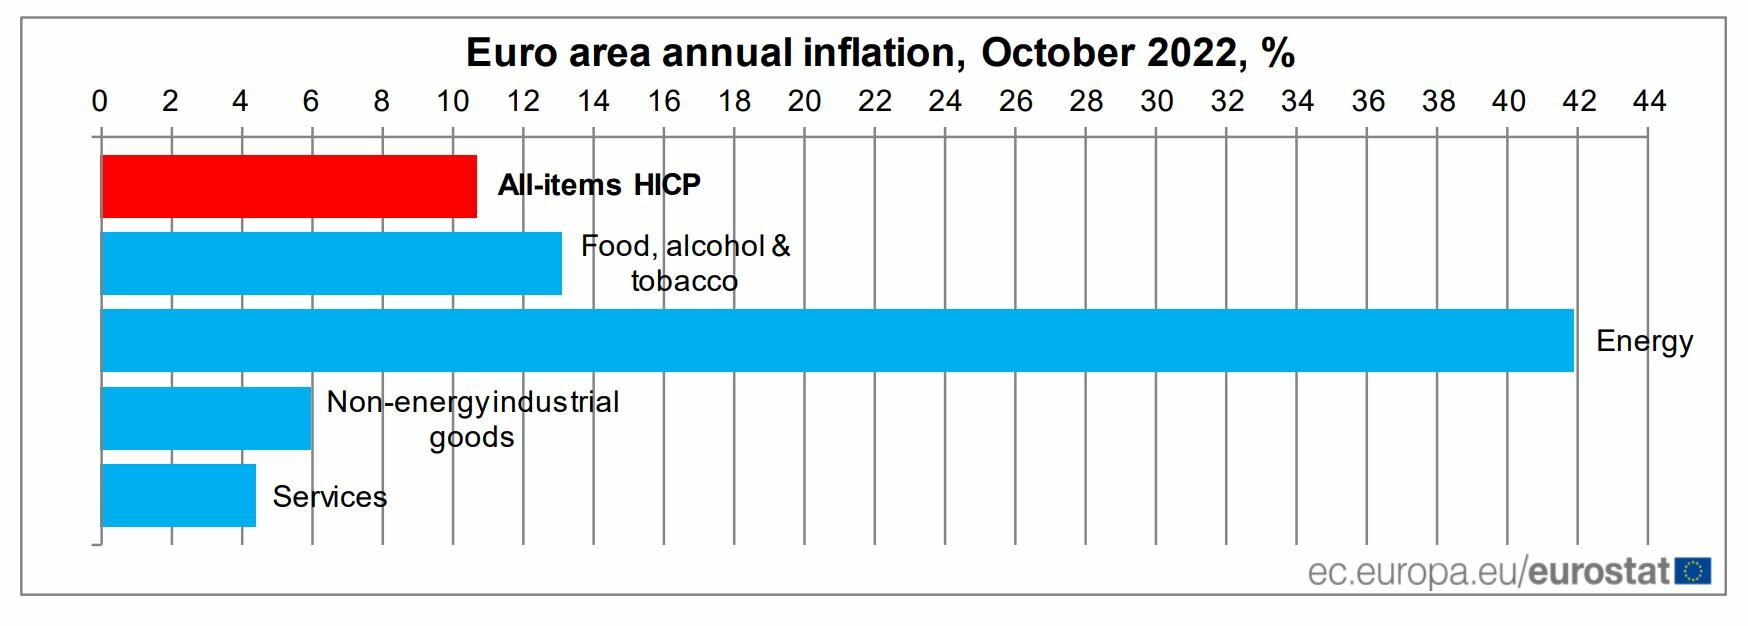 BCE inflación de la eurozona en octubre 